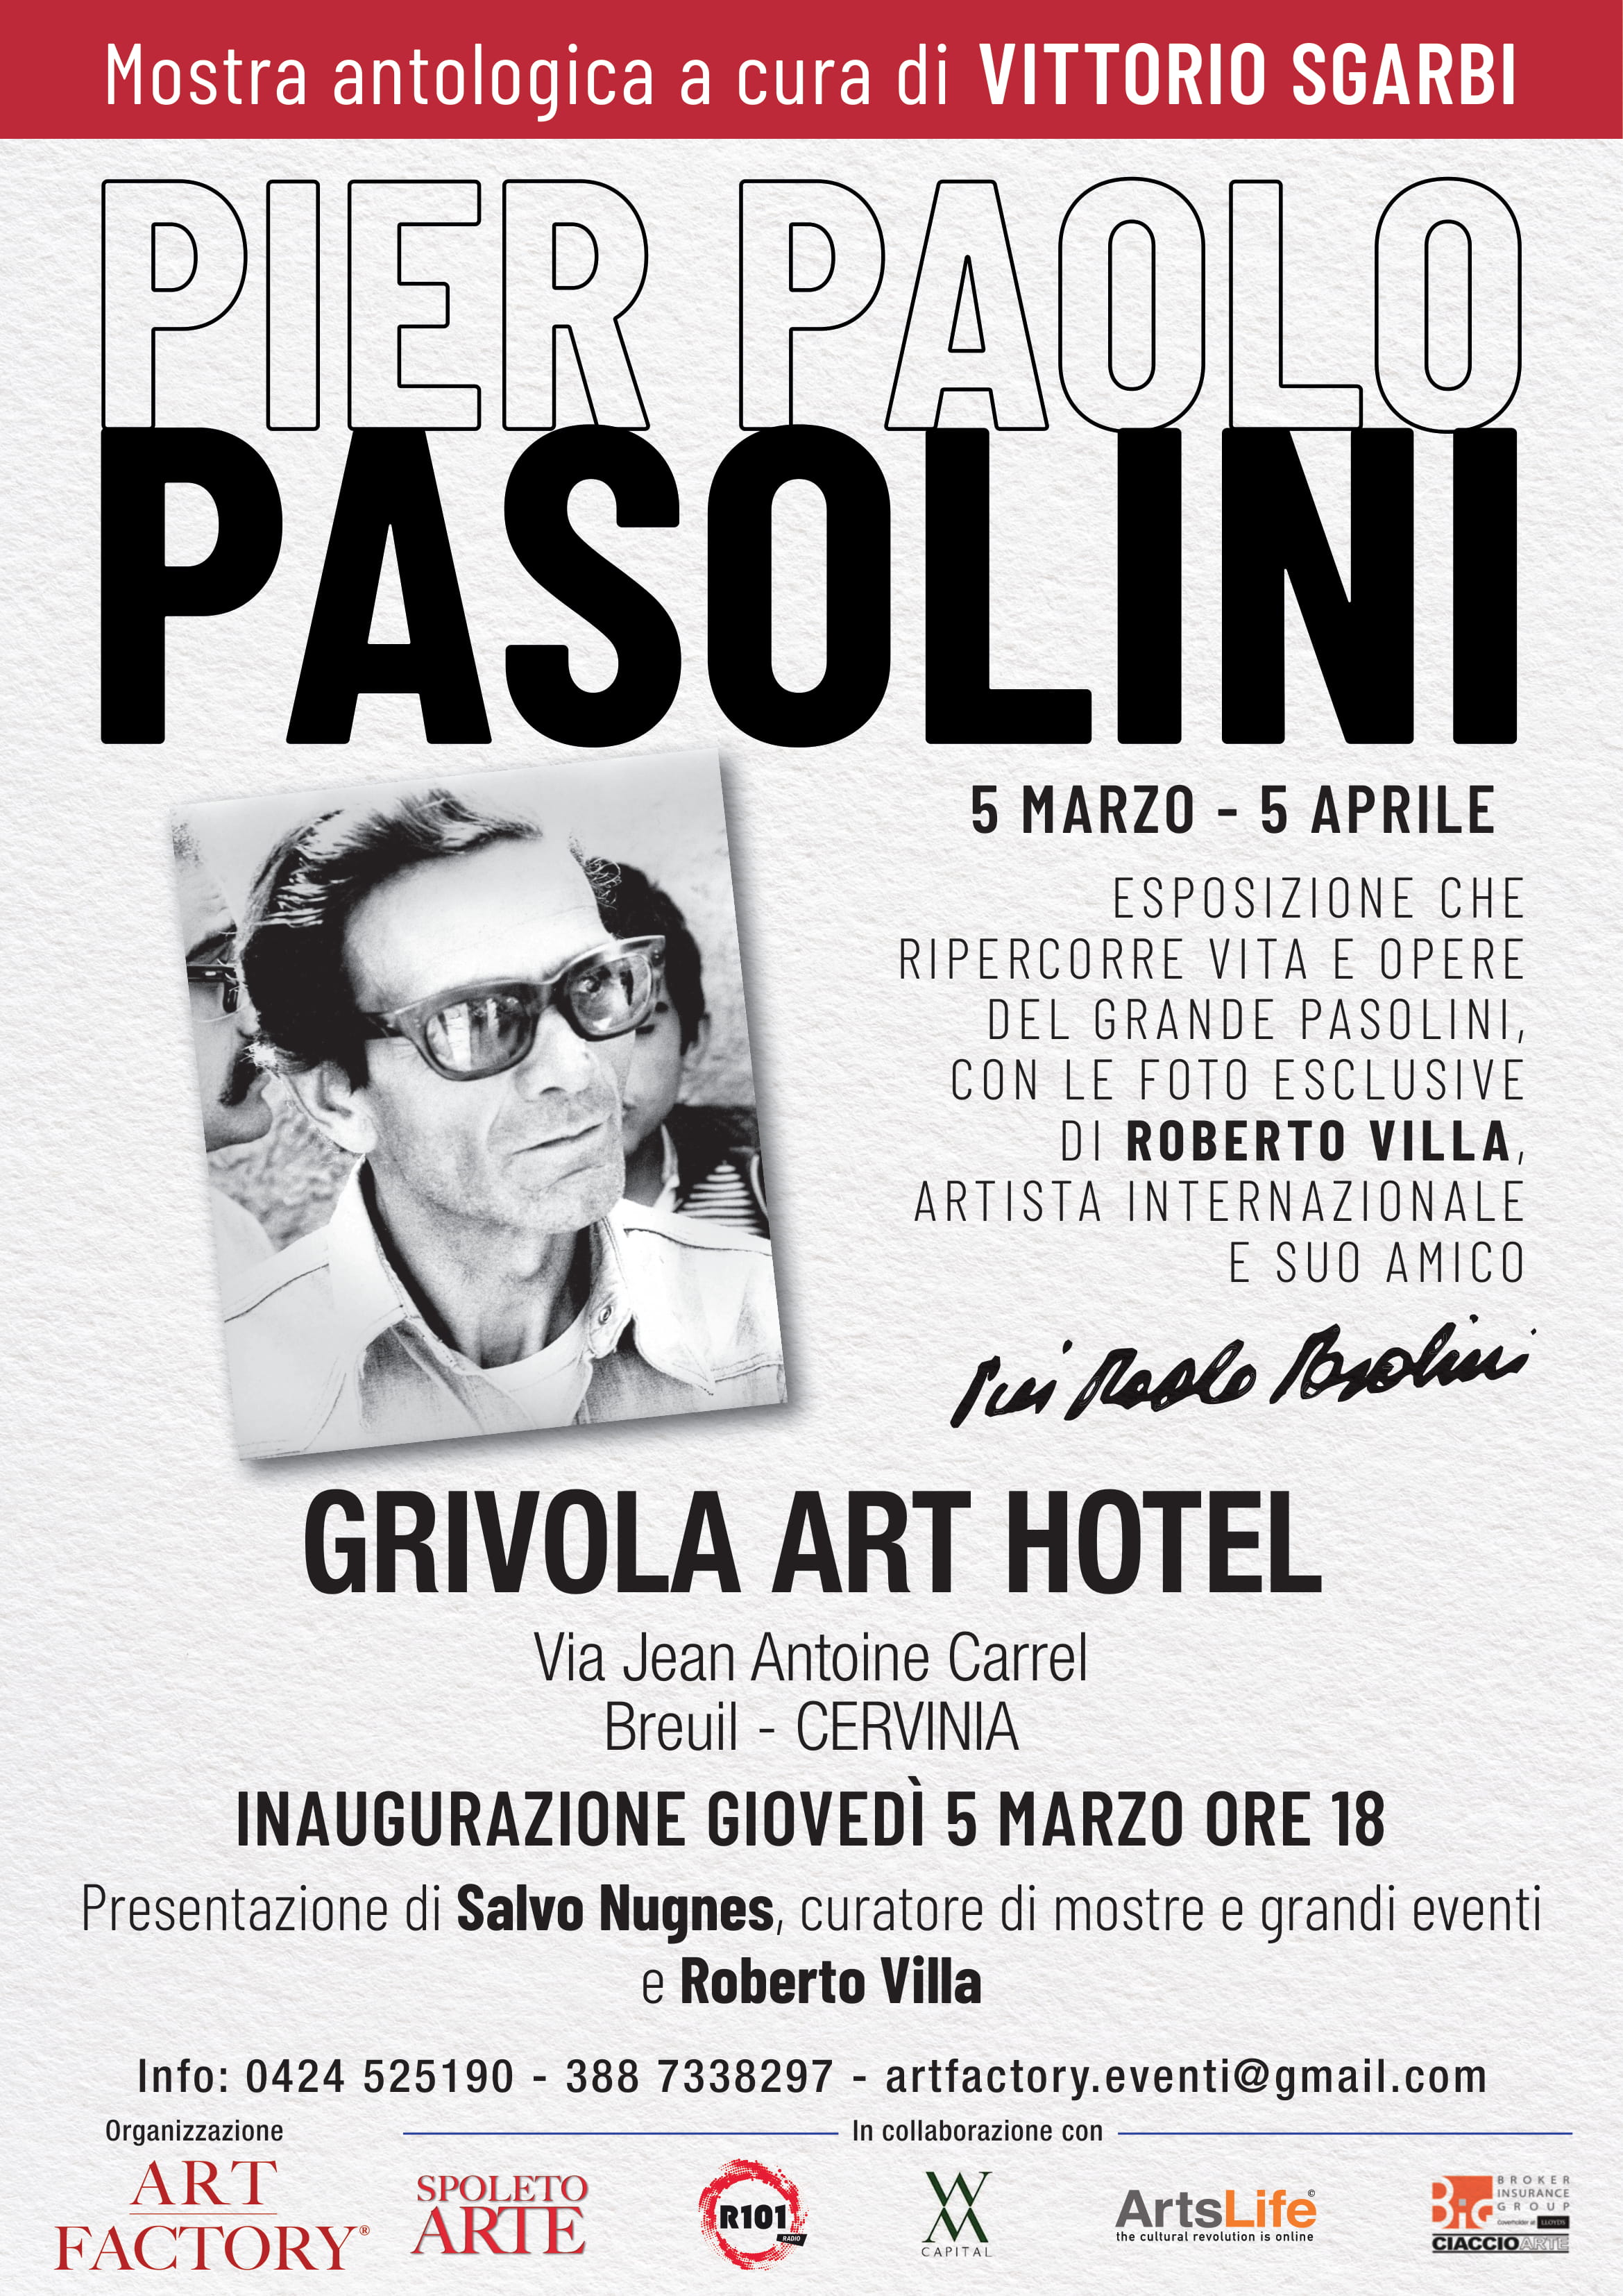 Pier Paolo Pasolini: la mostra antologica a cura di Sgarbi in Cervinia